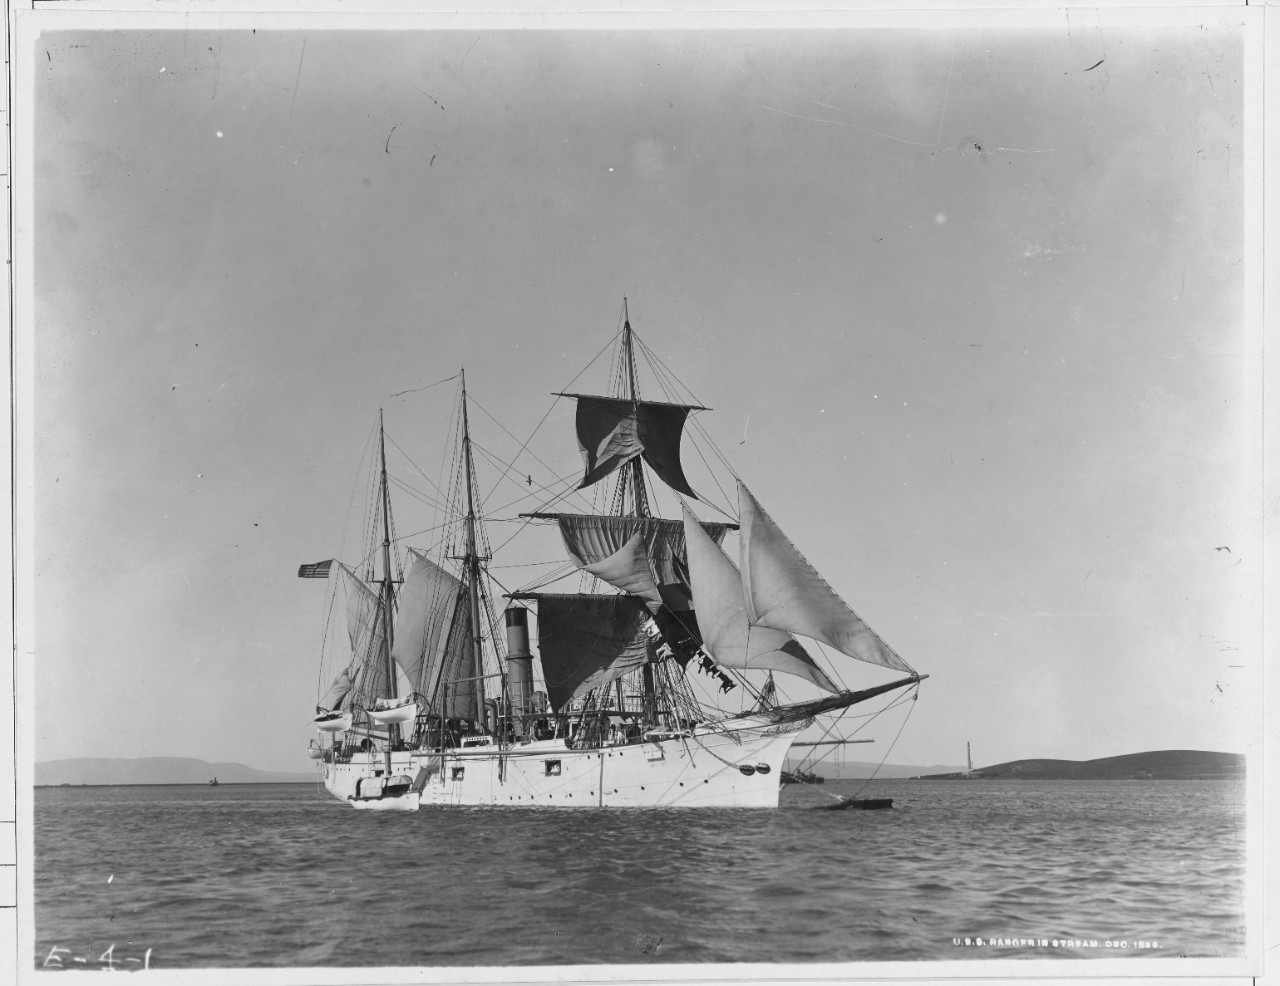 USS RANGER, 1873-1940